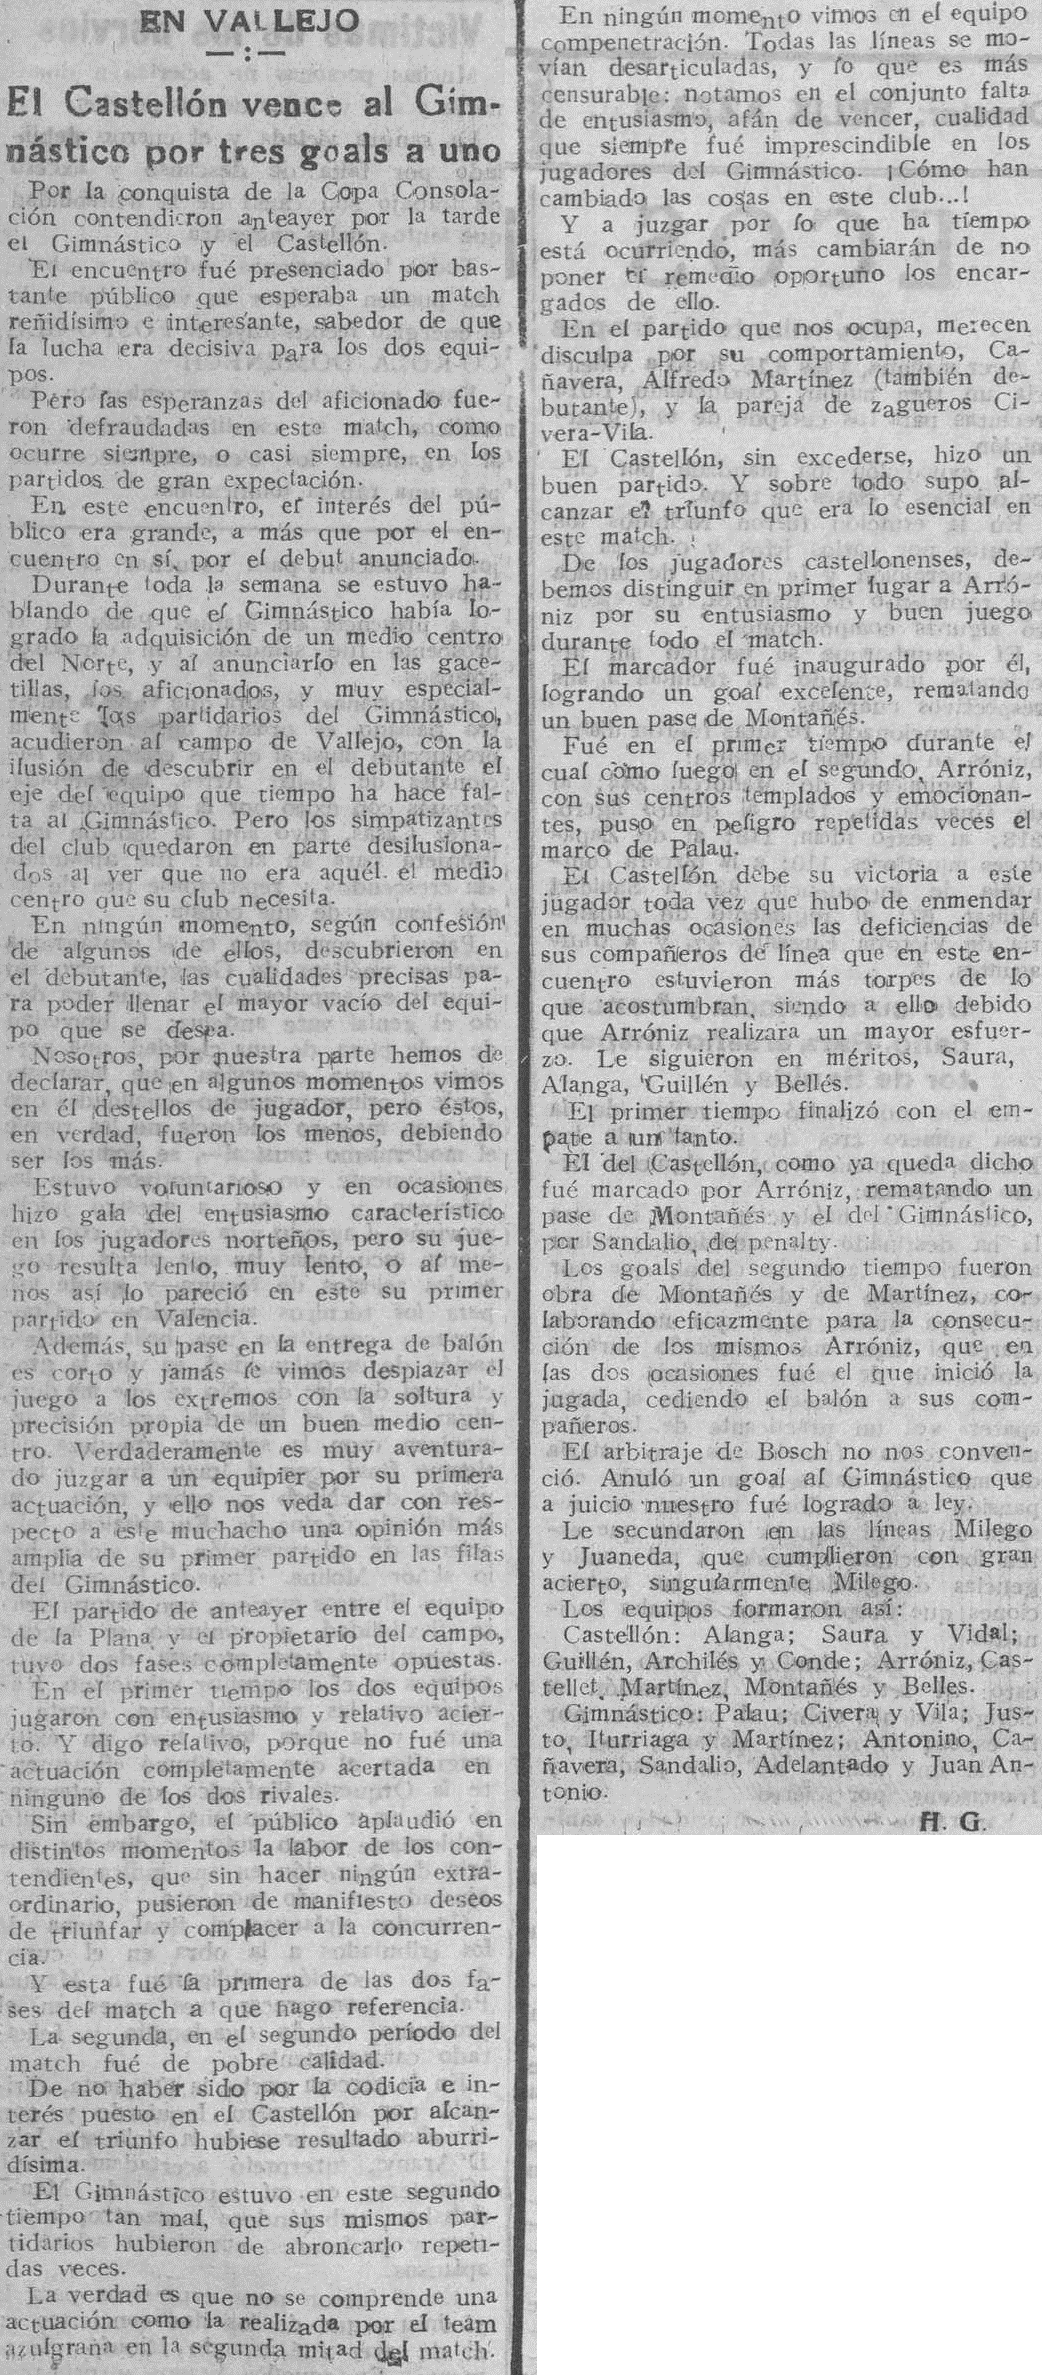 1928.04.22 (22 апреля 1928), Гимнастико - Кастельон, 1-3.png